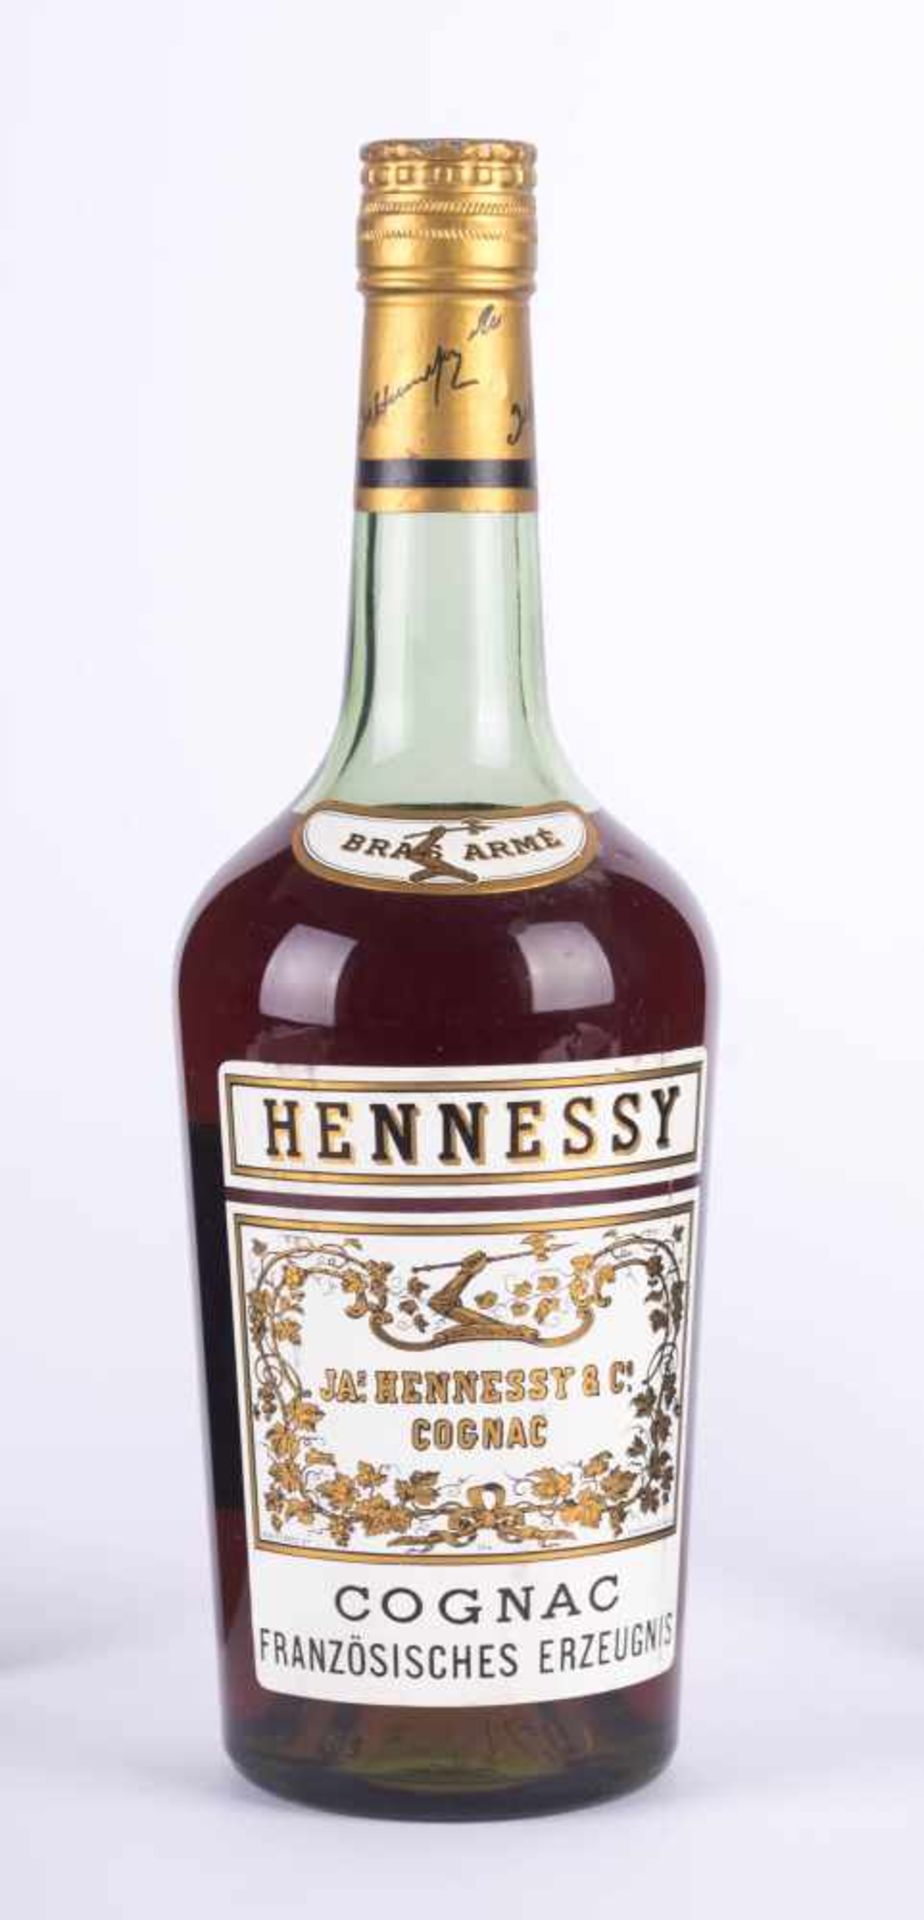 Hennessy Cognac Franreich 1960 Füllstand normal, Etikett guter Zustand, 0,7 l Hennessy Cognac France